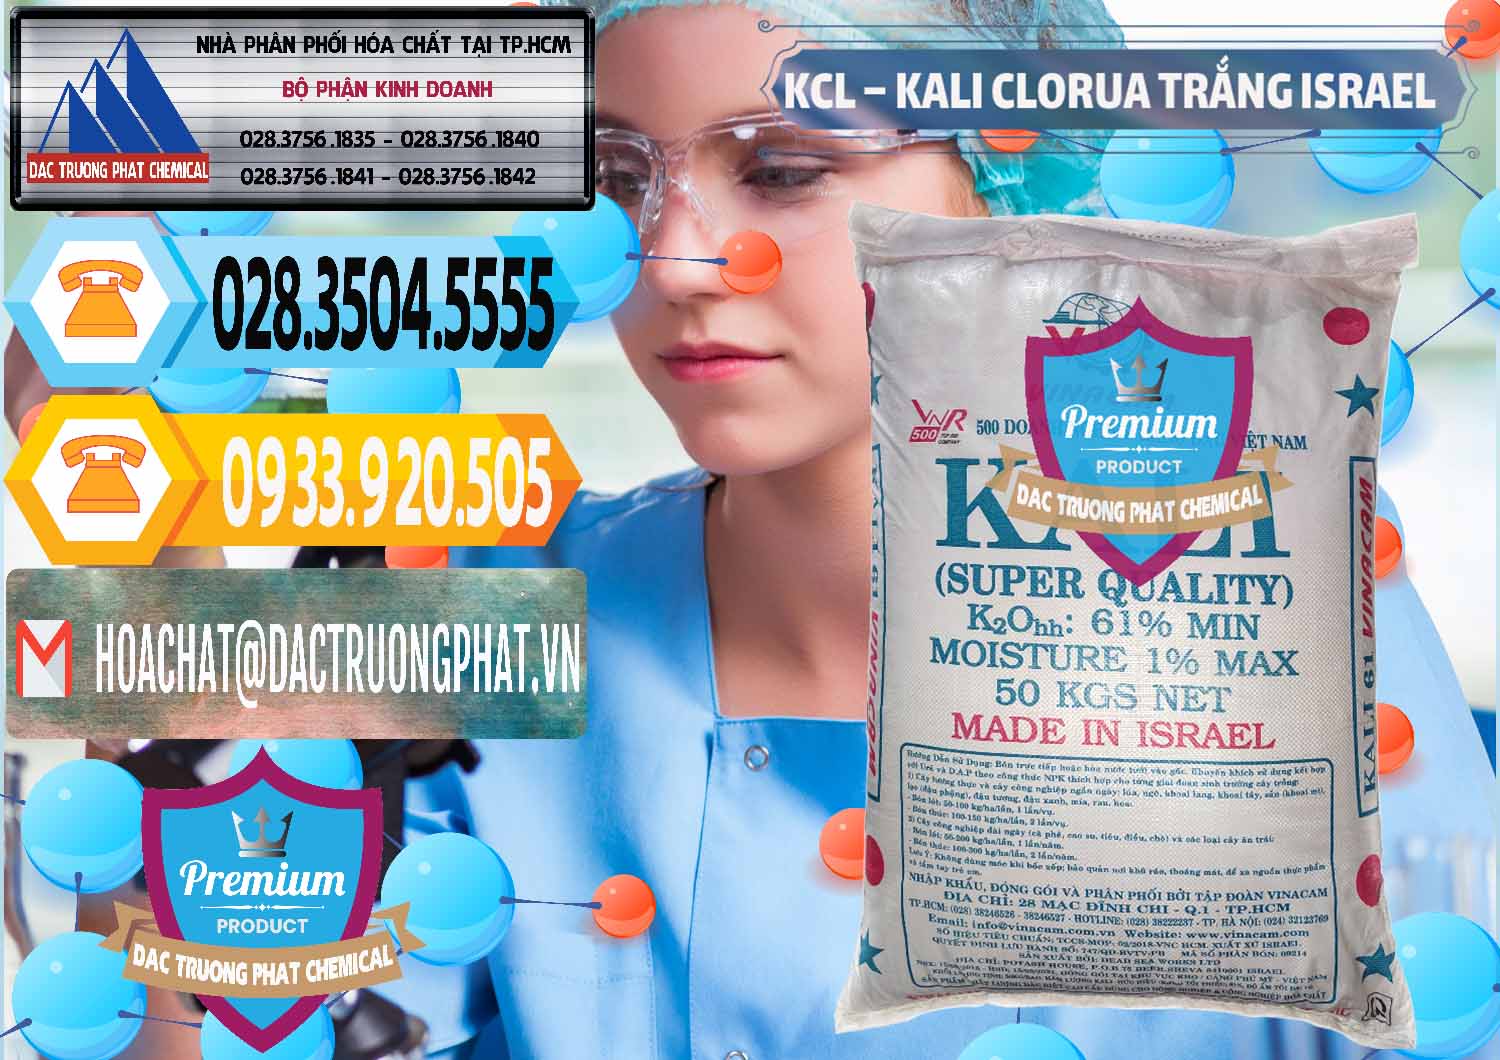 Công ty chuyên bán ( cung ứng ) KCL – Kali Clorua Trắng Israel - 0087 - Công ty kinh doanh ( phân phối ) hóa chất tại TP.HCM - hoachattayrua.net